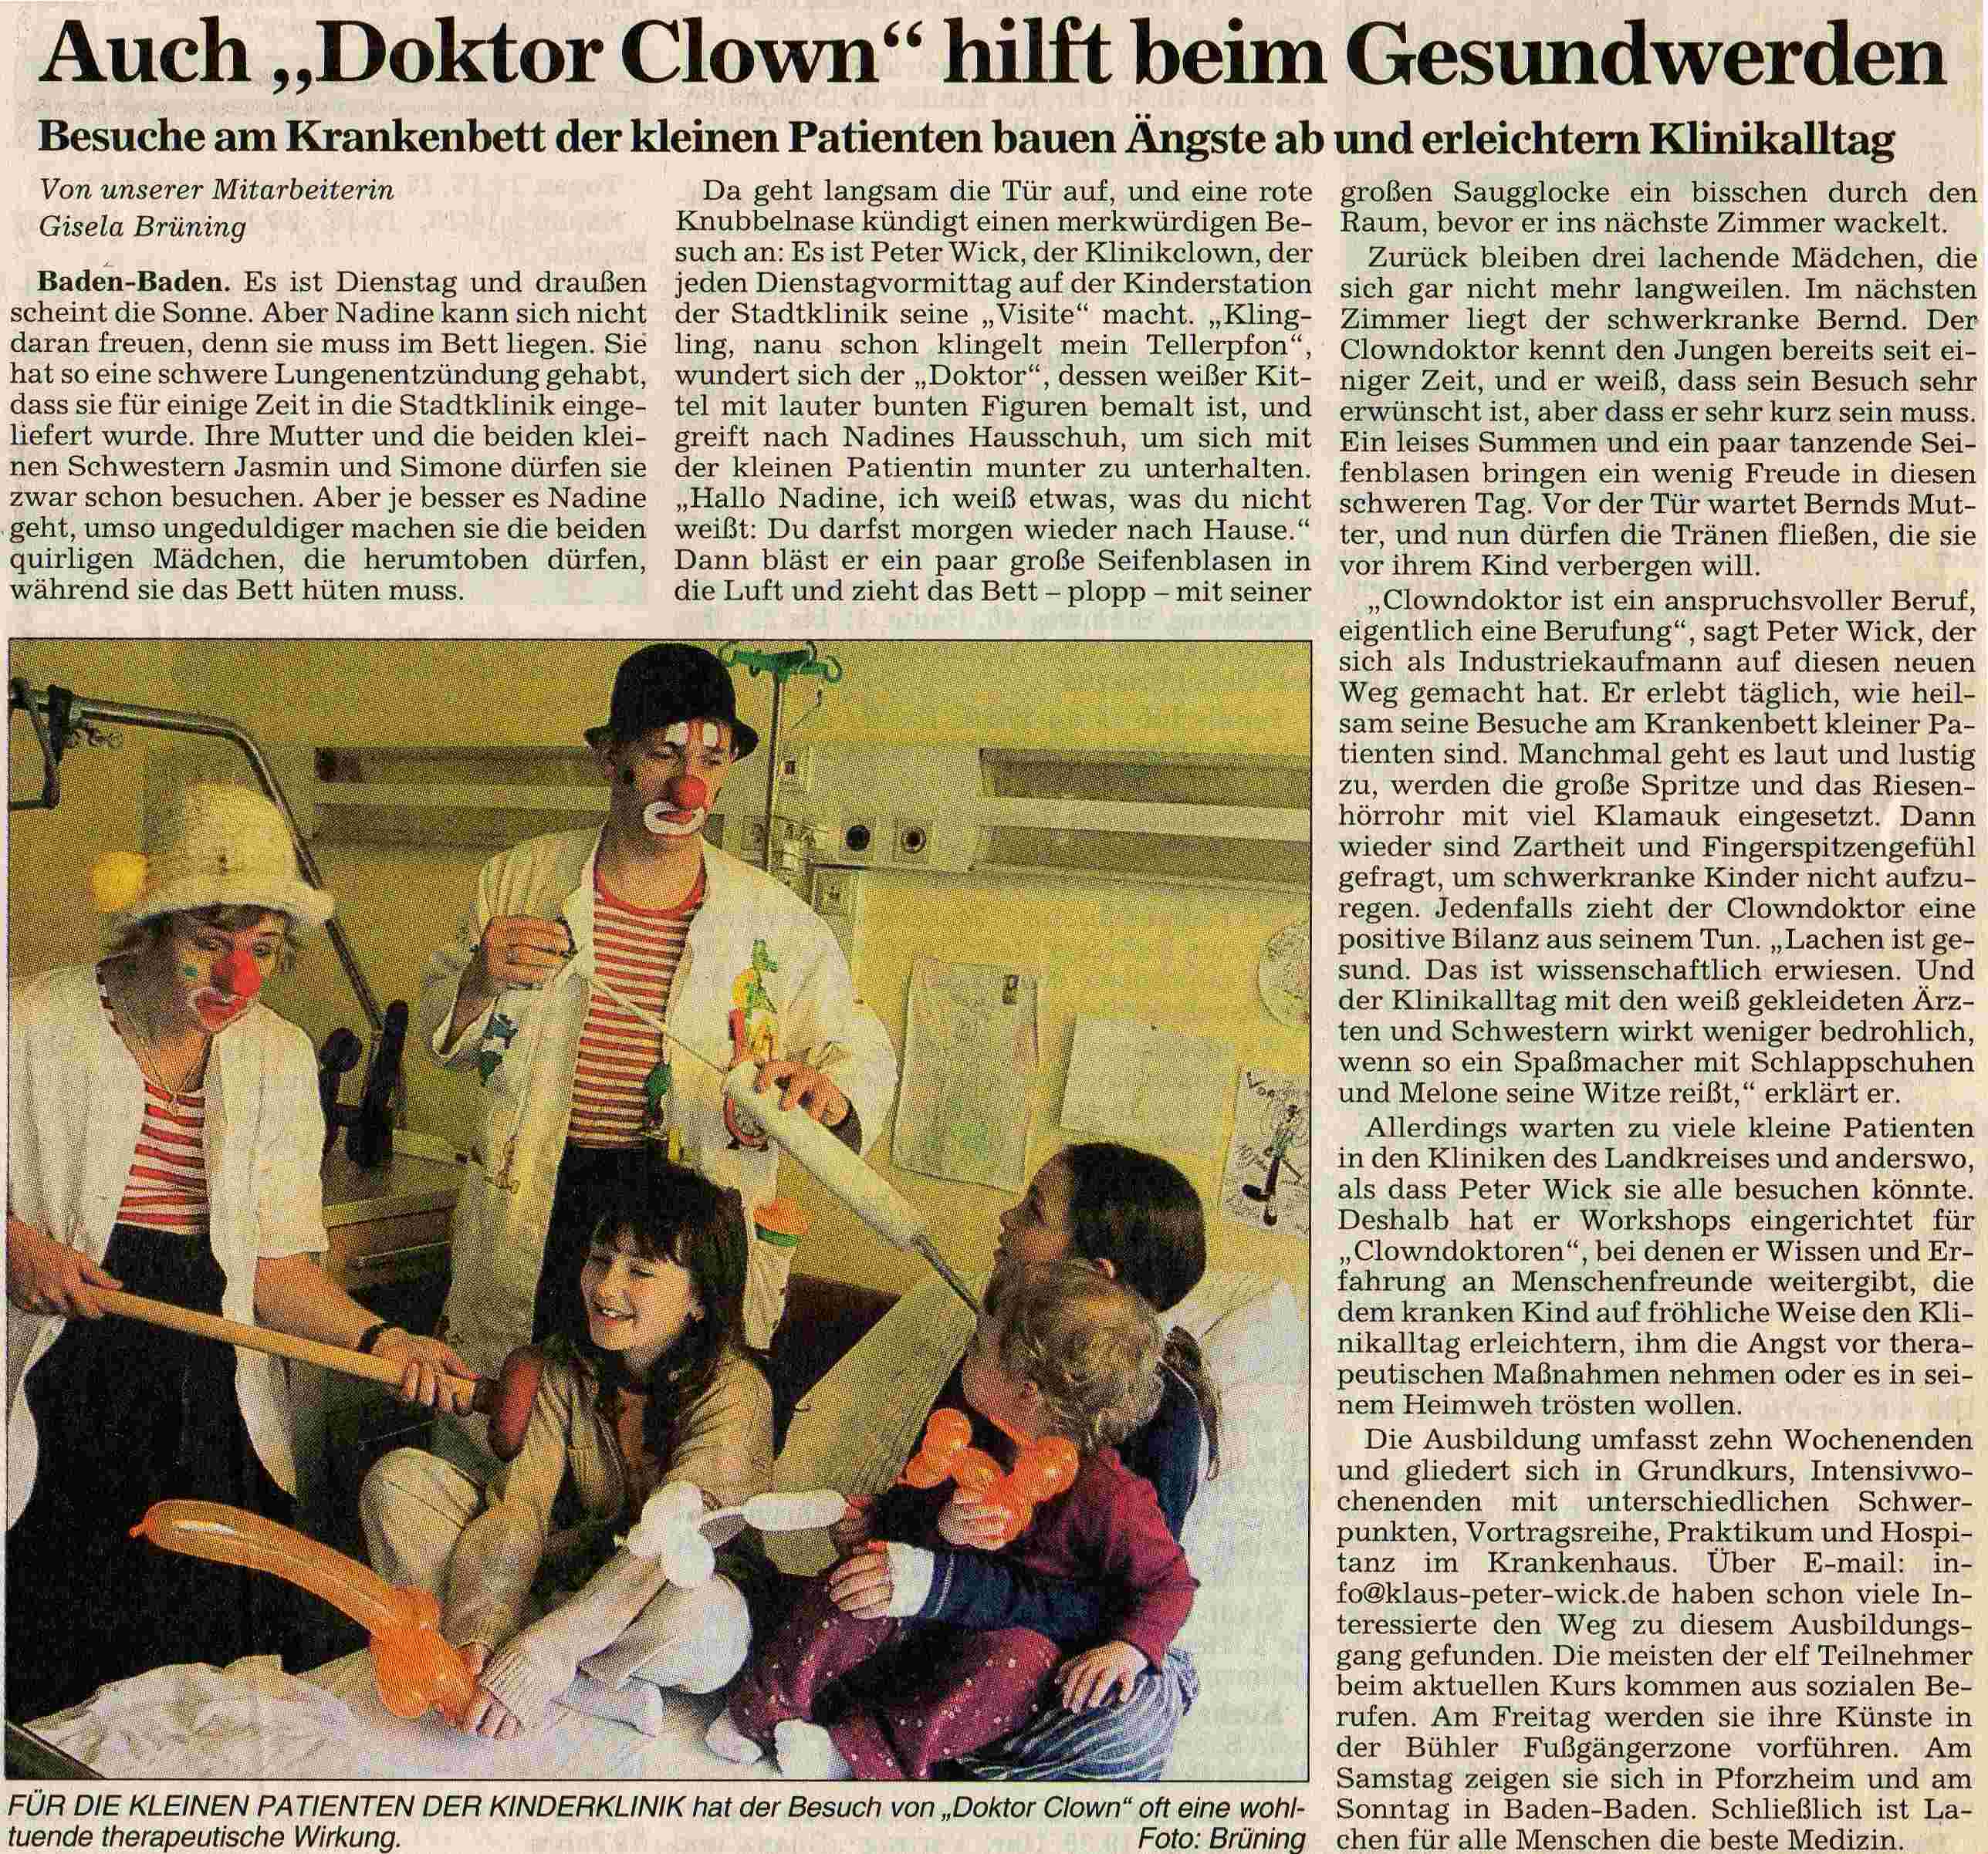 clowndoktor_badische_neueste_nachrichten_april_2003